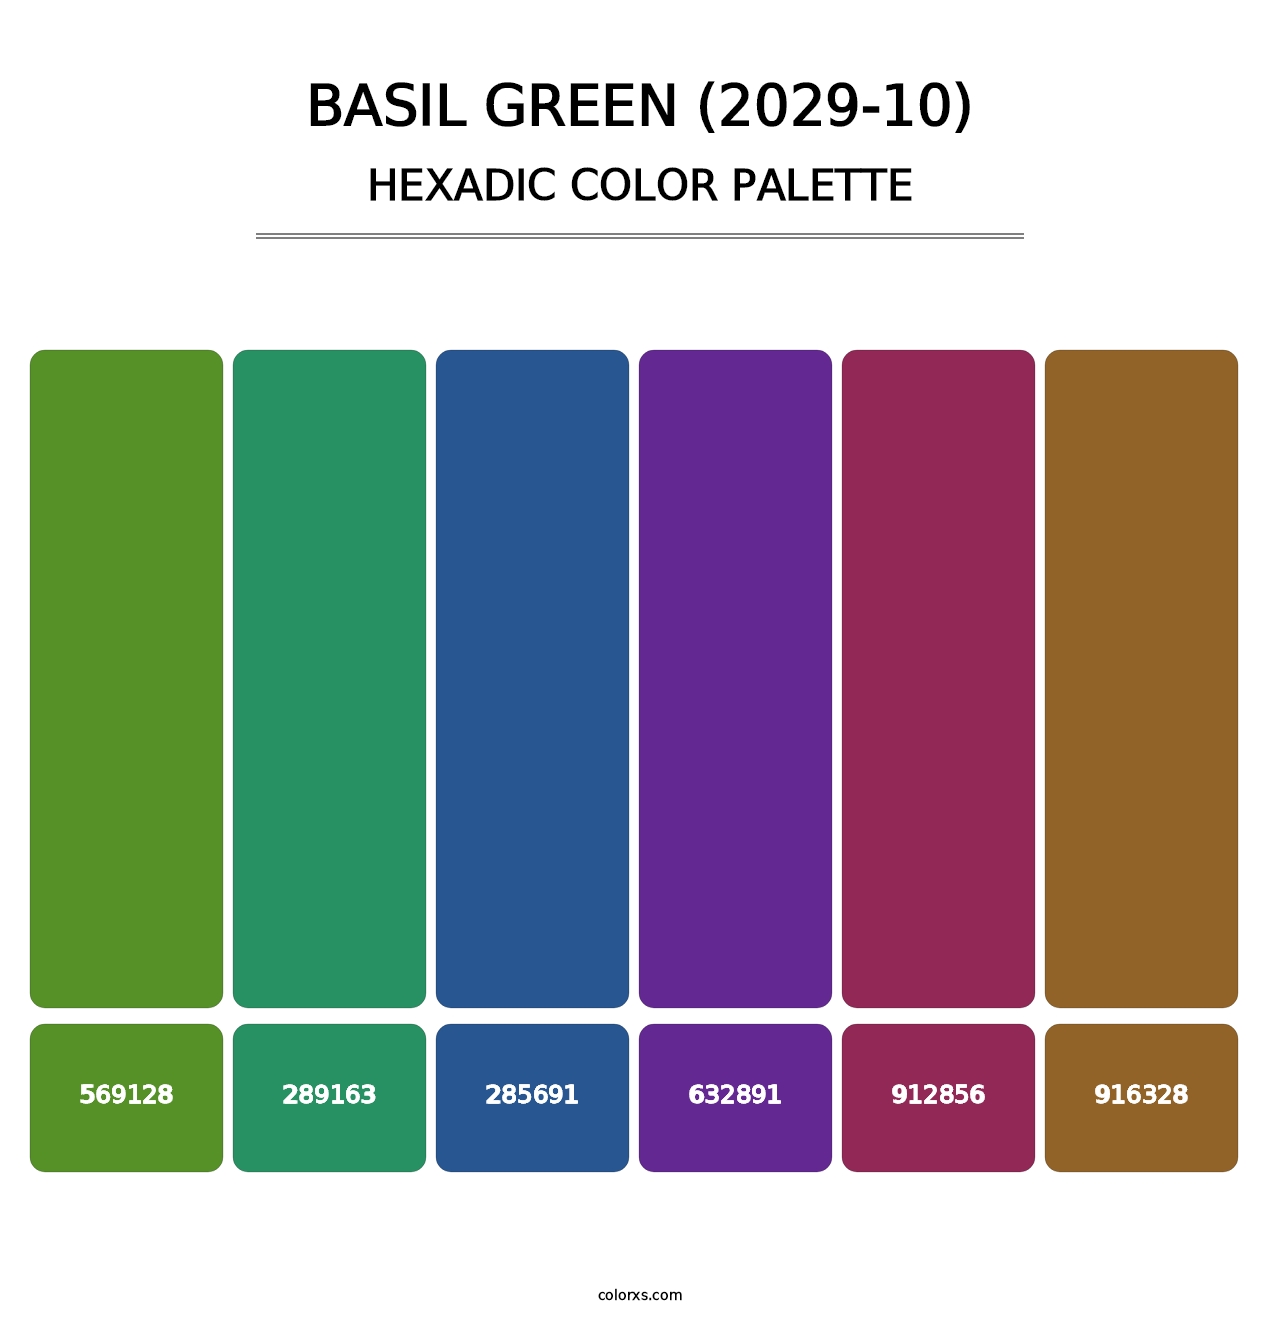 Basil Green (2029-10) - Hexadic Color Palette